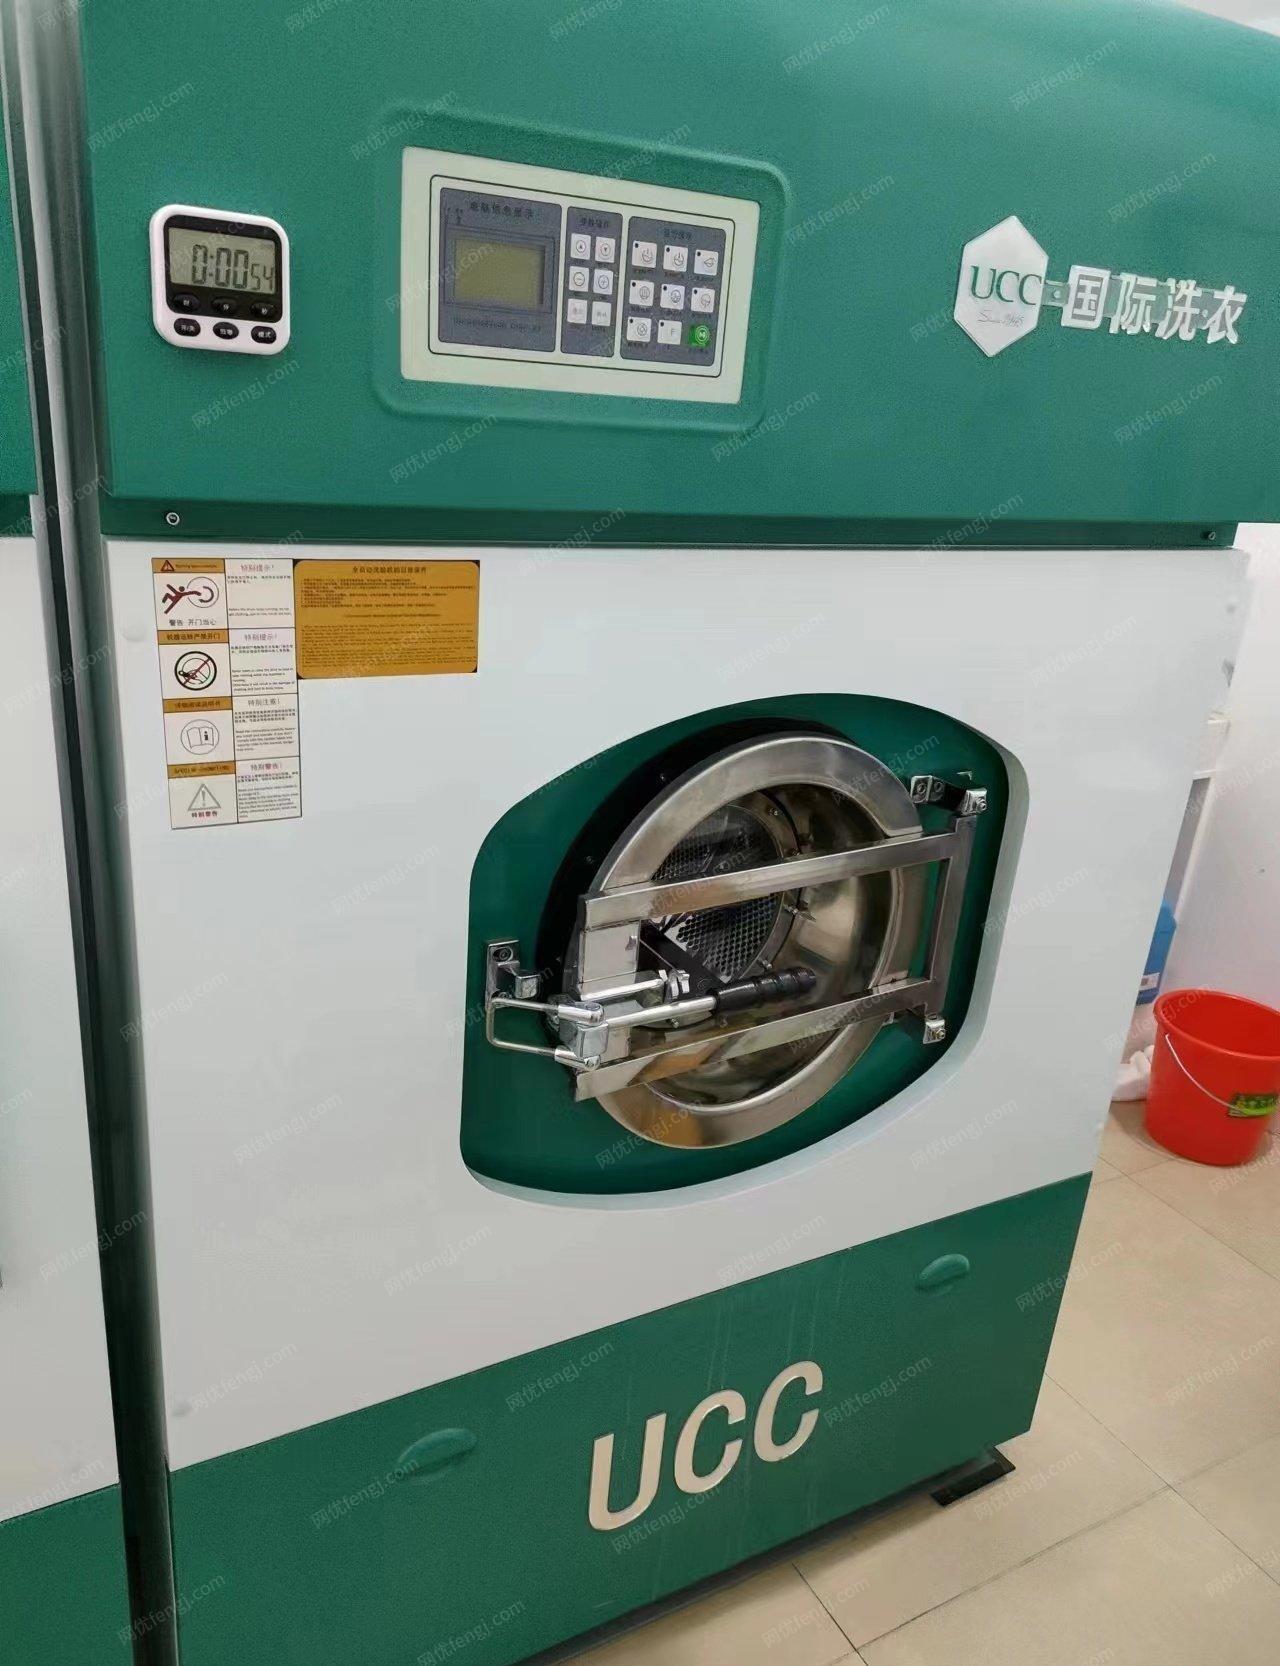 新疆伊犁因为导致店面倒闭无力支付当时开店贷的款项2022年全套UCC洗涤设备低价出售